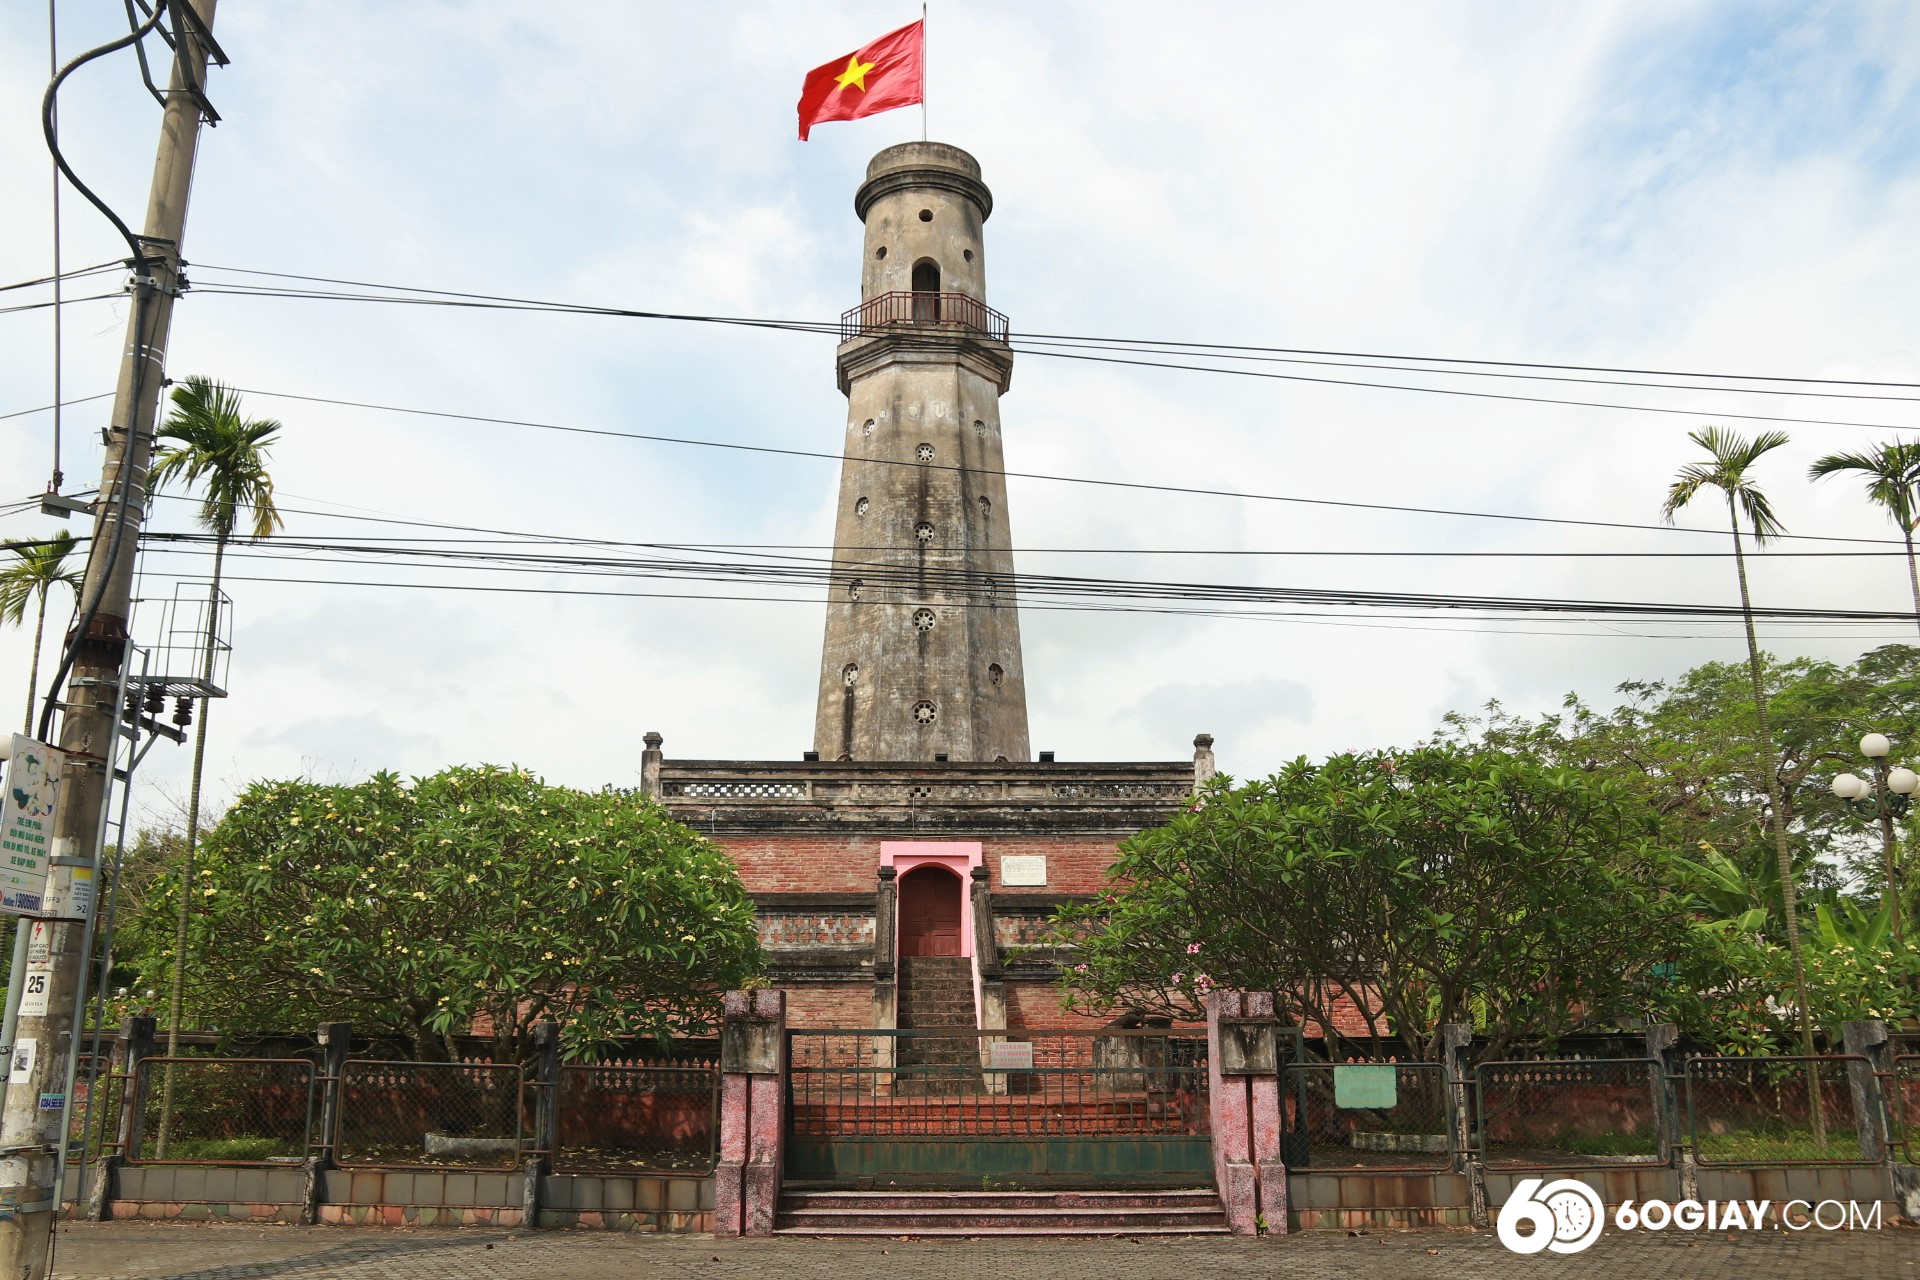 Khi đến thăm quan Cột cờ, người dân Nam Định và du khách có thể nhìn lại lịch sử, nhìn lại những mốc son tự hào trong các giai đoạn đấu tranh giành độc lập dân tộc.